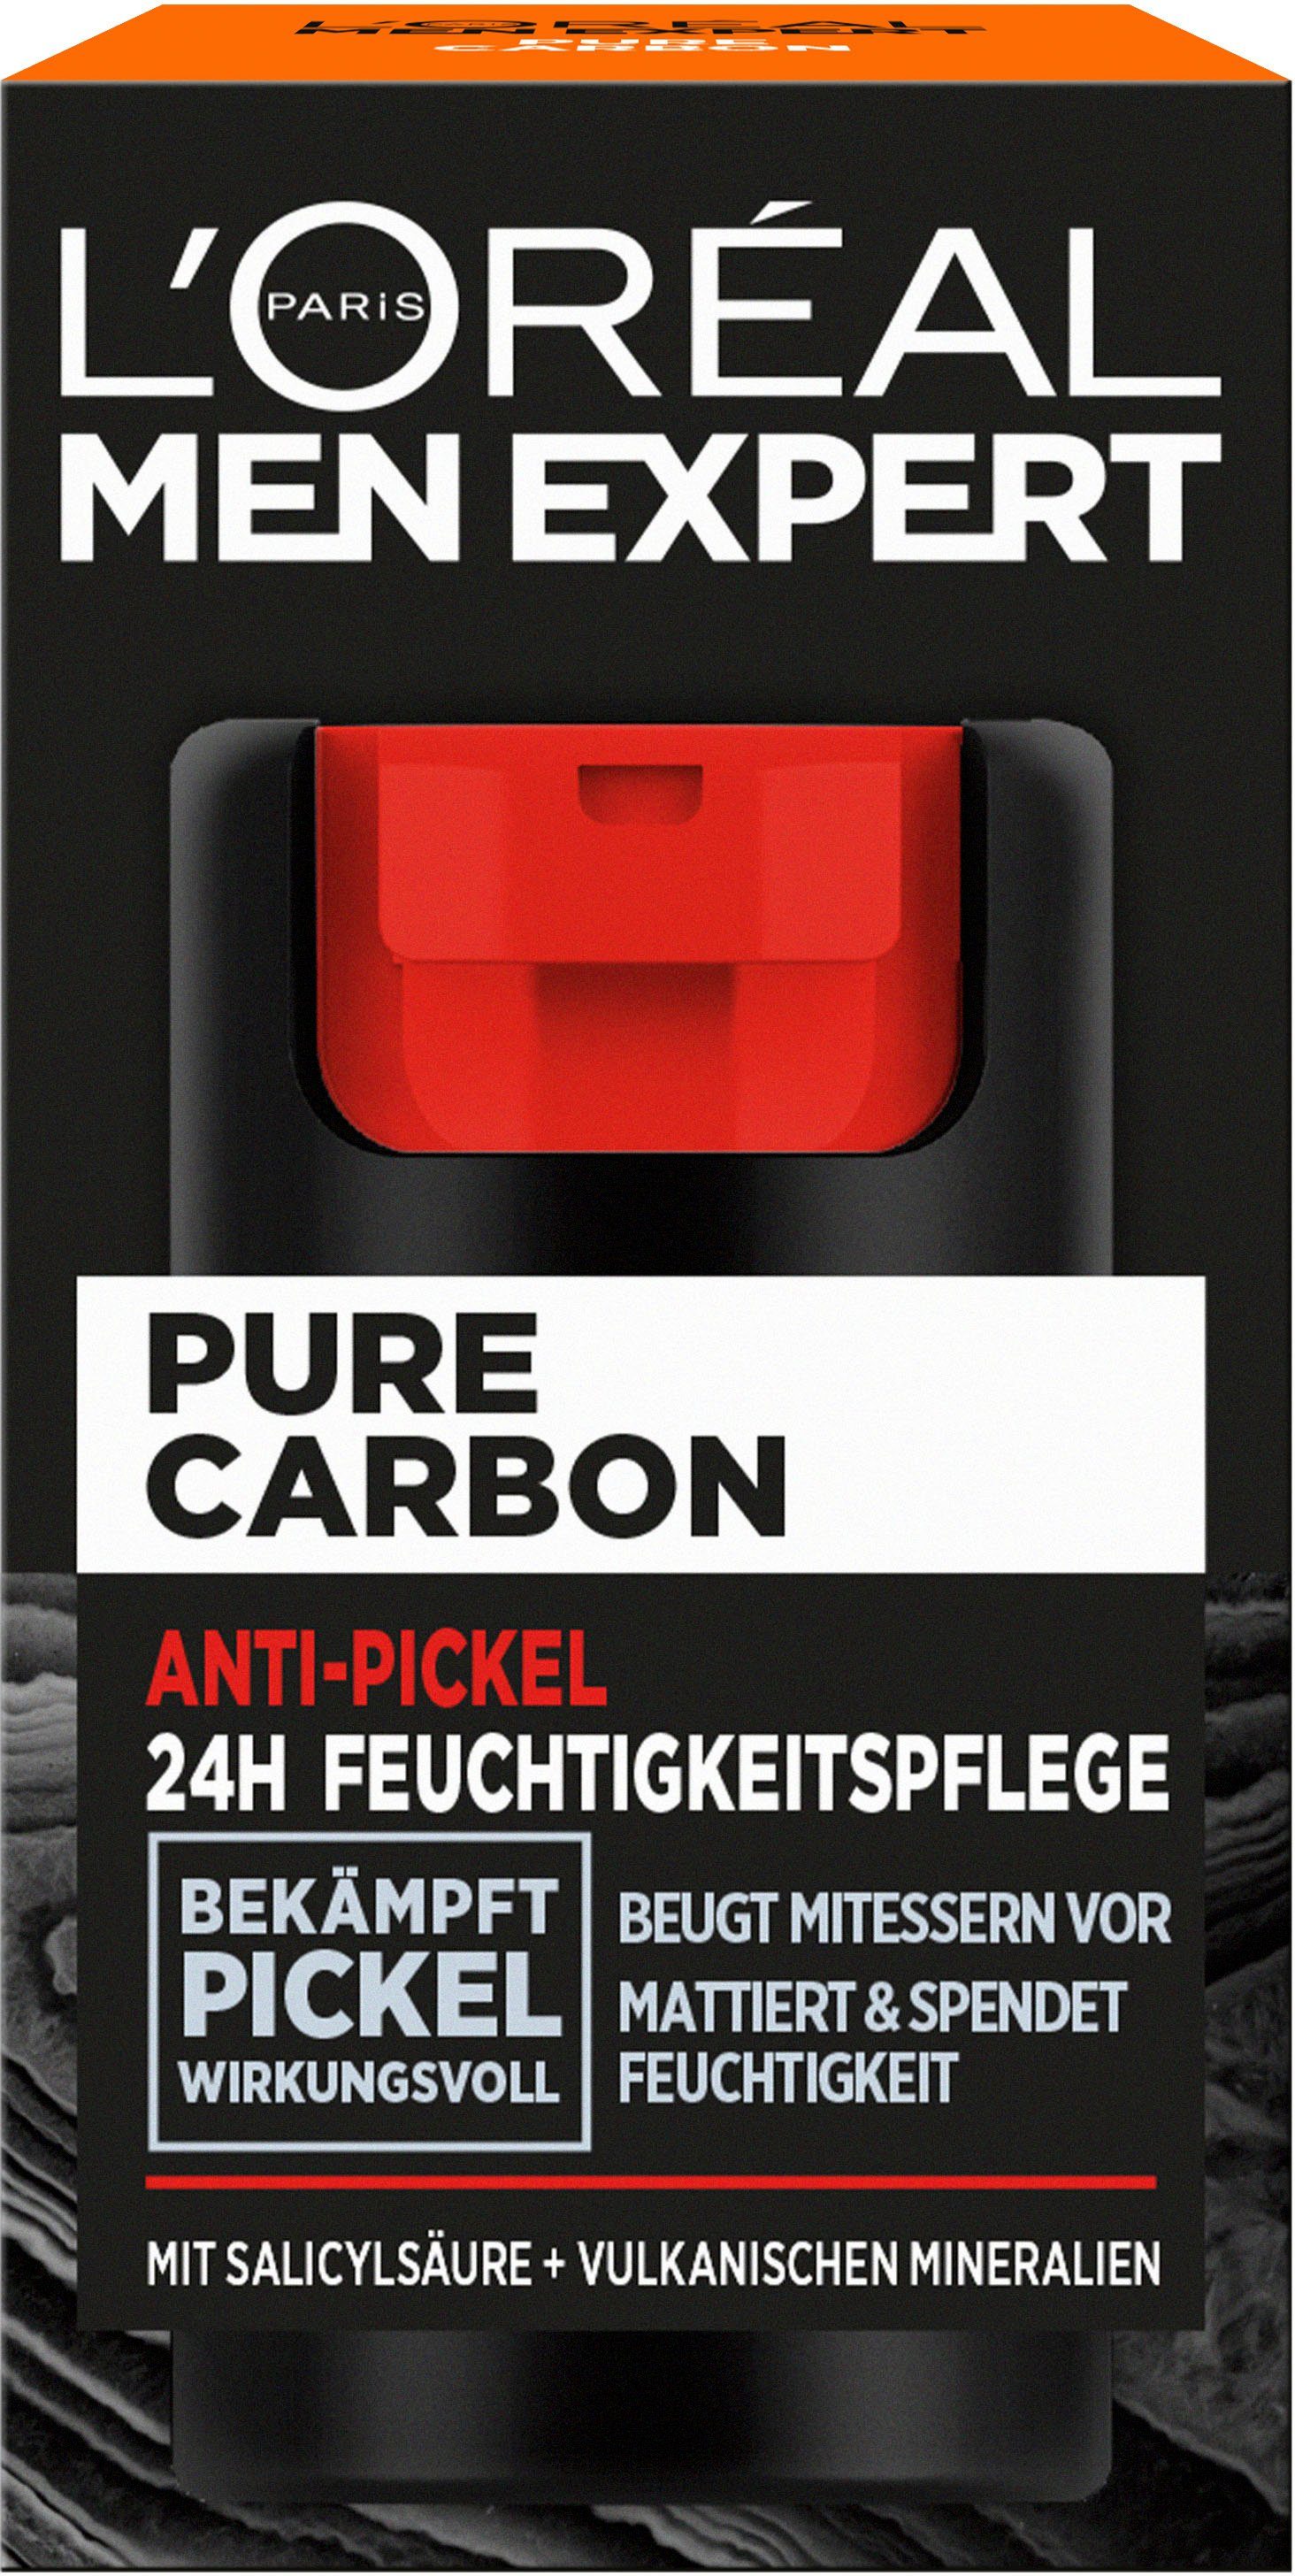 Men PARIS L'Oréal Anti-Pickel EXPERT Gesichtsgel Pflege L'ORÉAL MEN Expert Carbon Pure